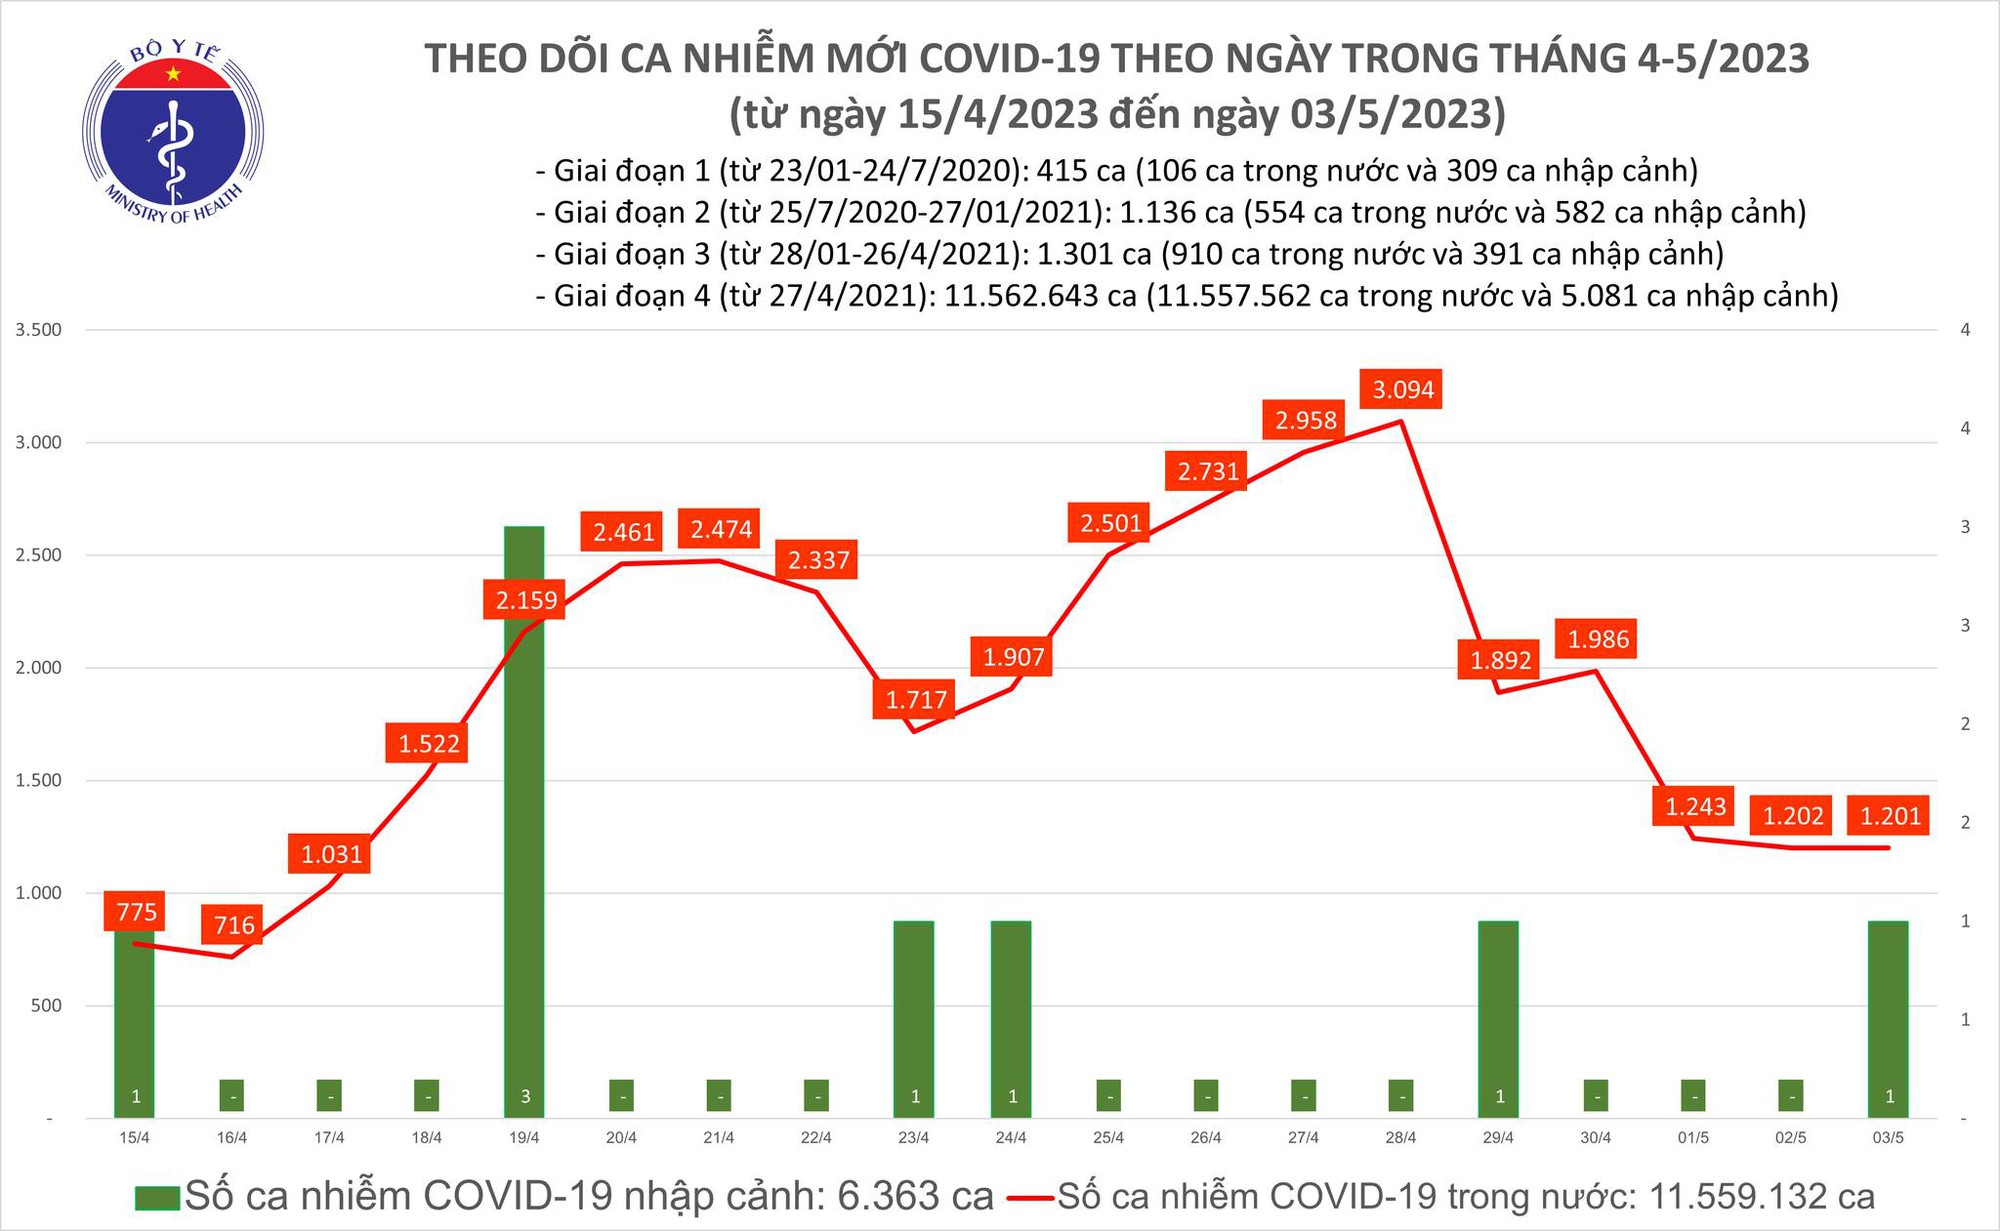 Ngày 3/5: Có 1.201 ca COVID-19 mới, 33 bệnh nhân thở máy - Ảnh 1.